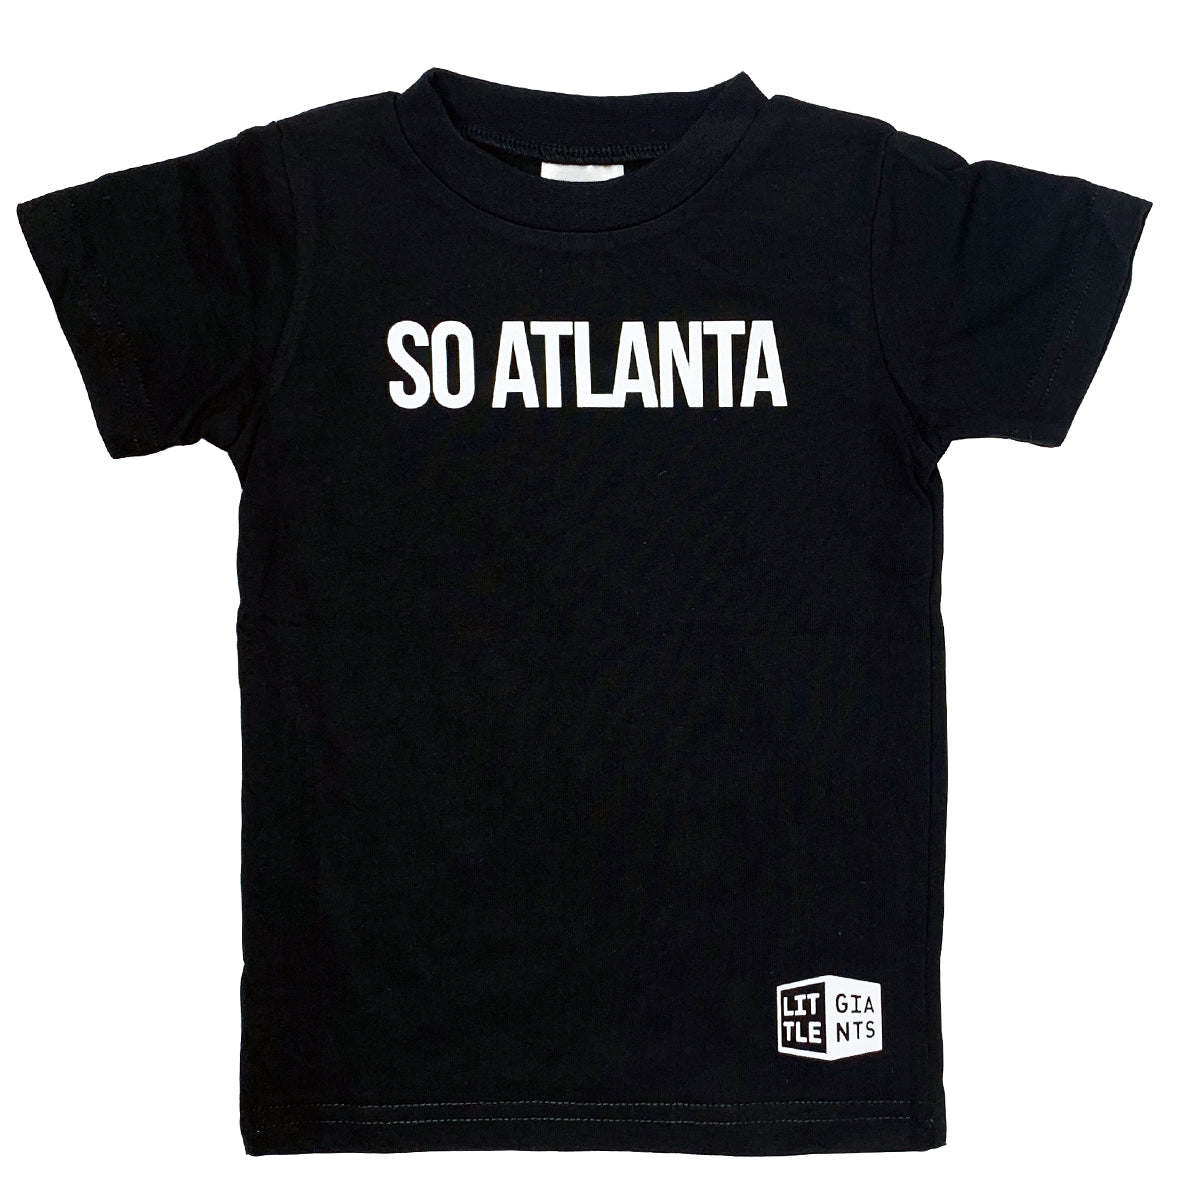 So Atlanta T-Shirt (Black)